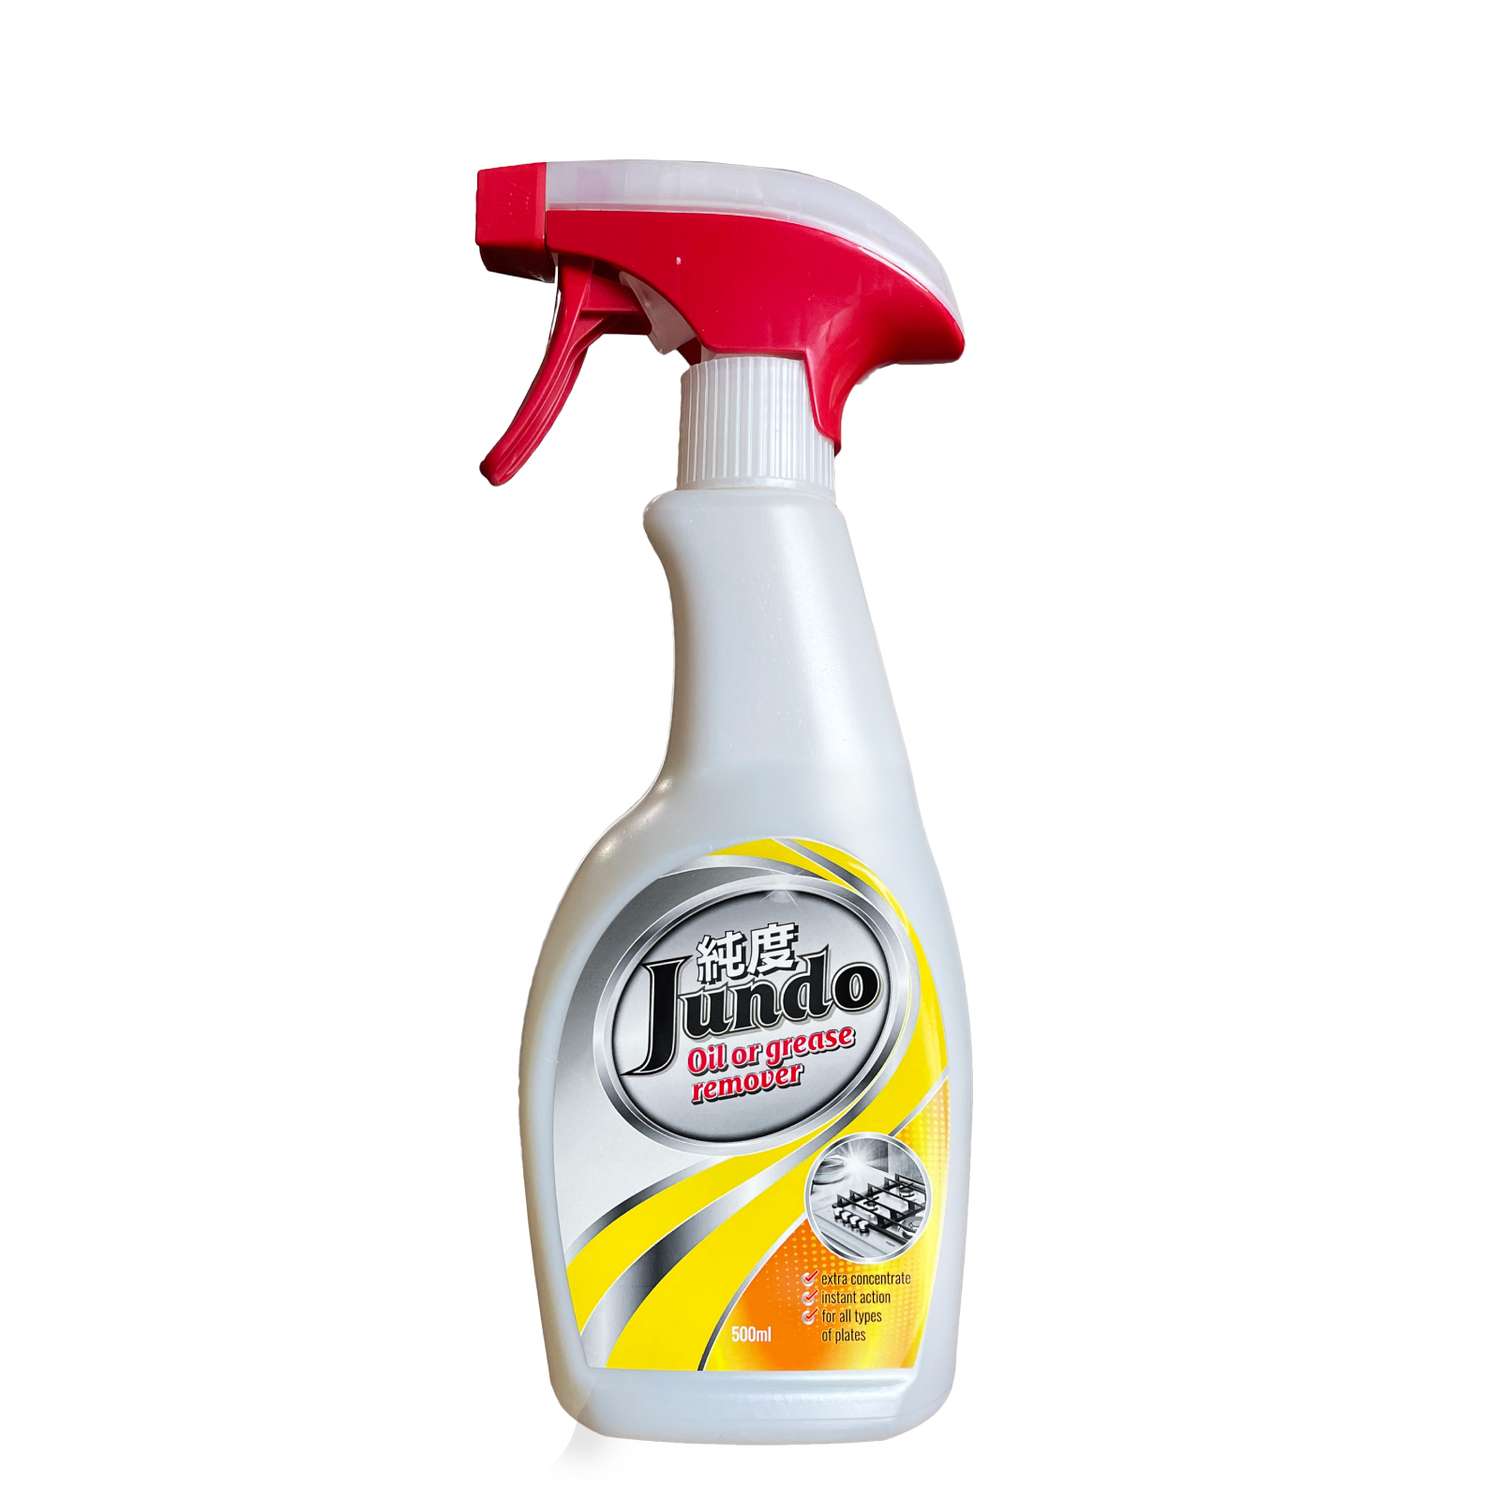 Жироудалитель Jundo Oil of grease remover 500 мл антижир концентрат для плит духовок вытяжек посуды - фото 6